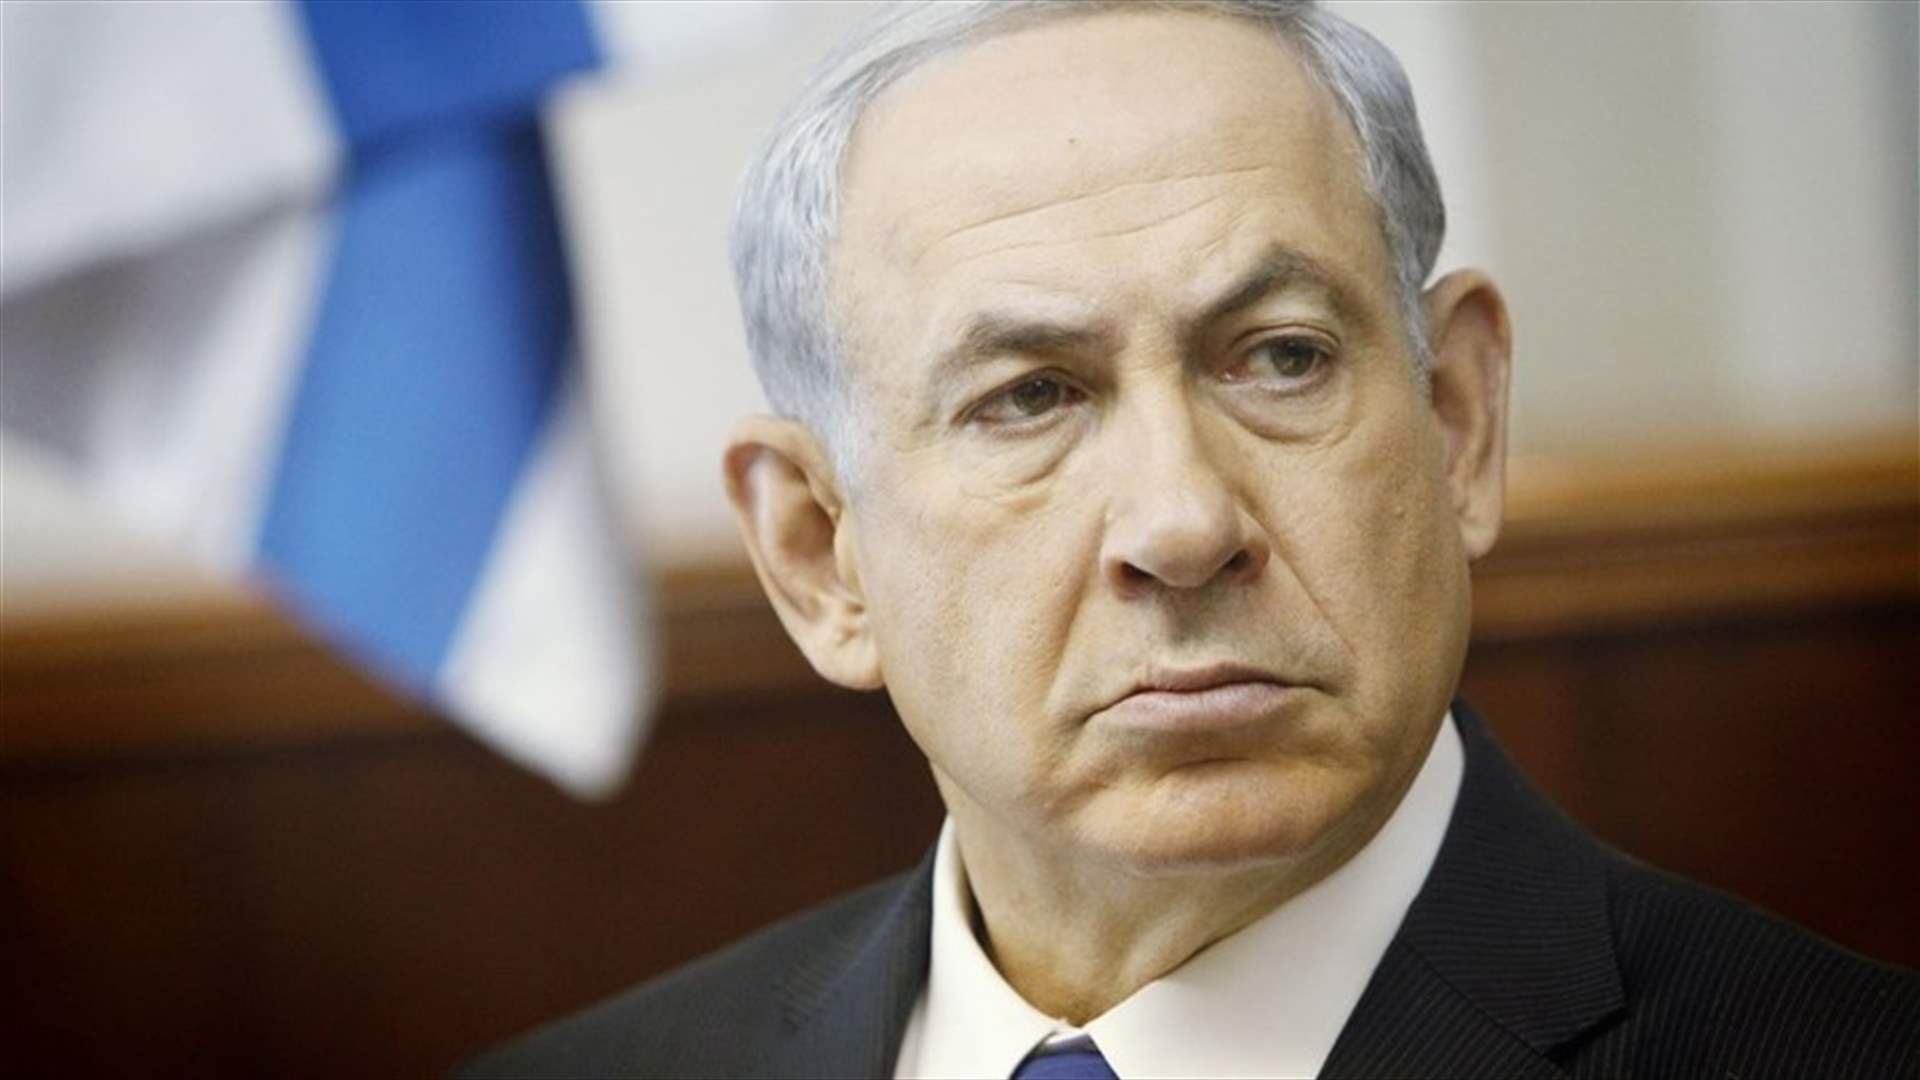 المدعي العام الاسرائيلي: لن أتساهل جنائيا مع نتانياهو في حال توافرت العناصر